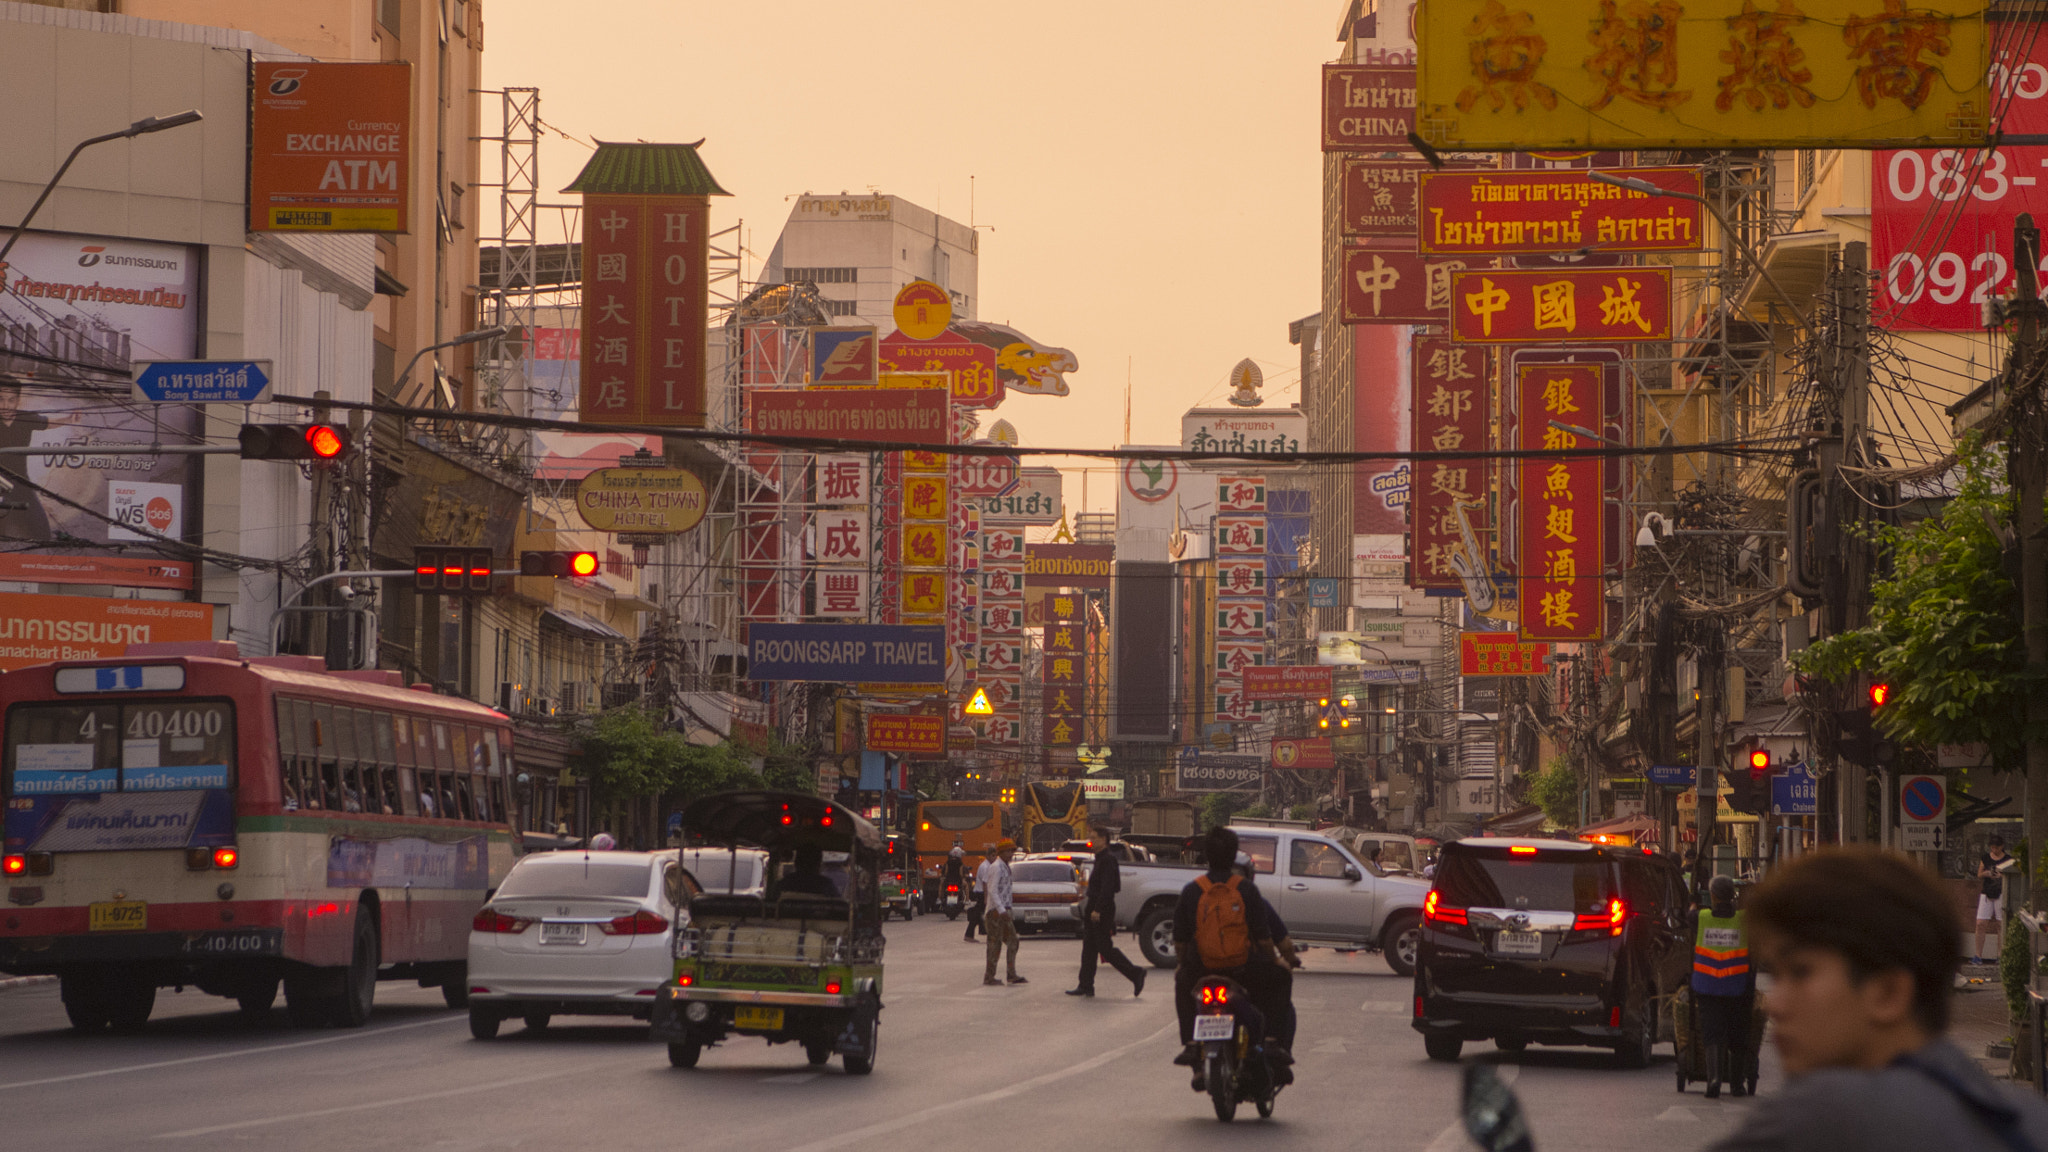 Nikon D800 sample photo. Thailand bangkok china town photography